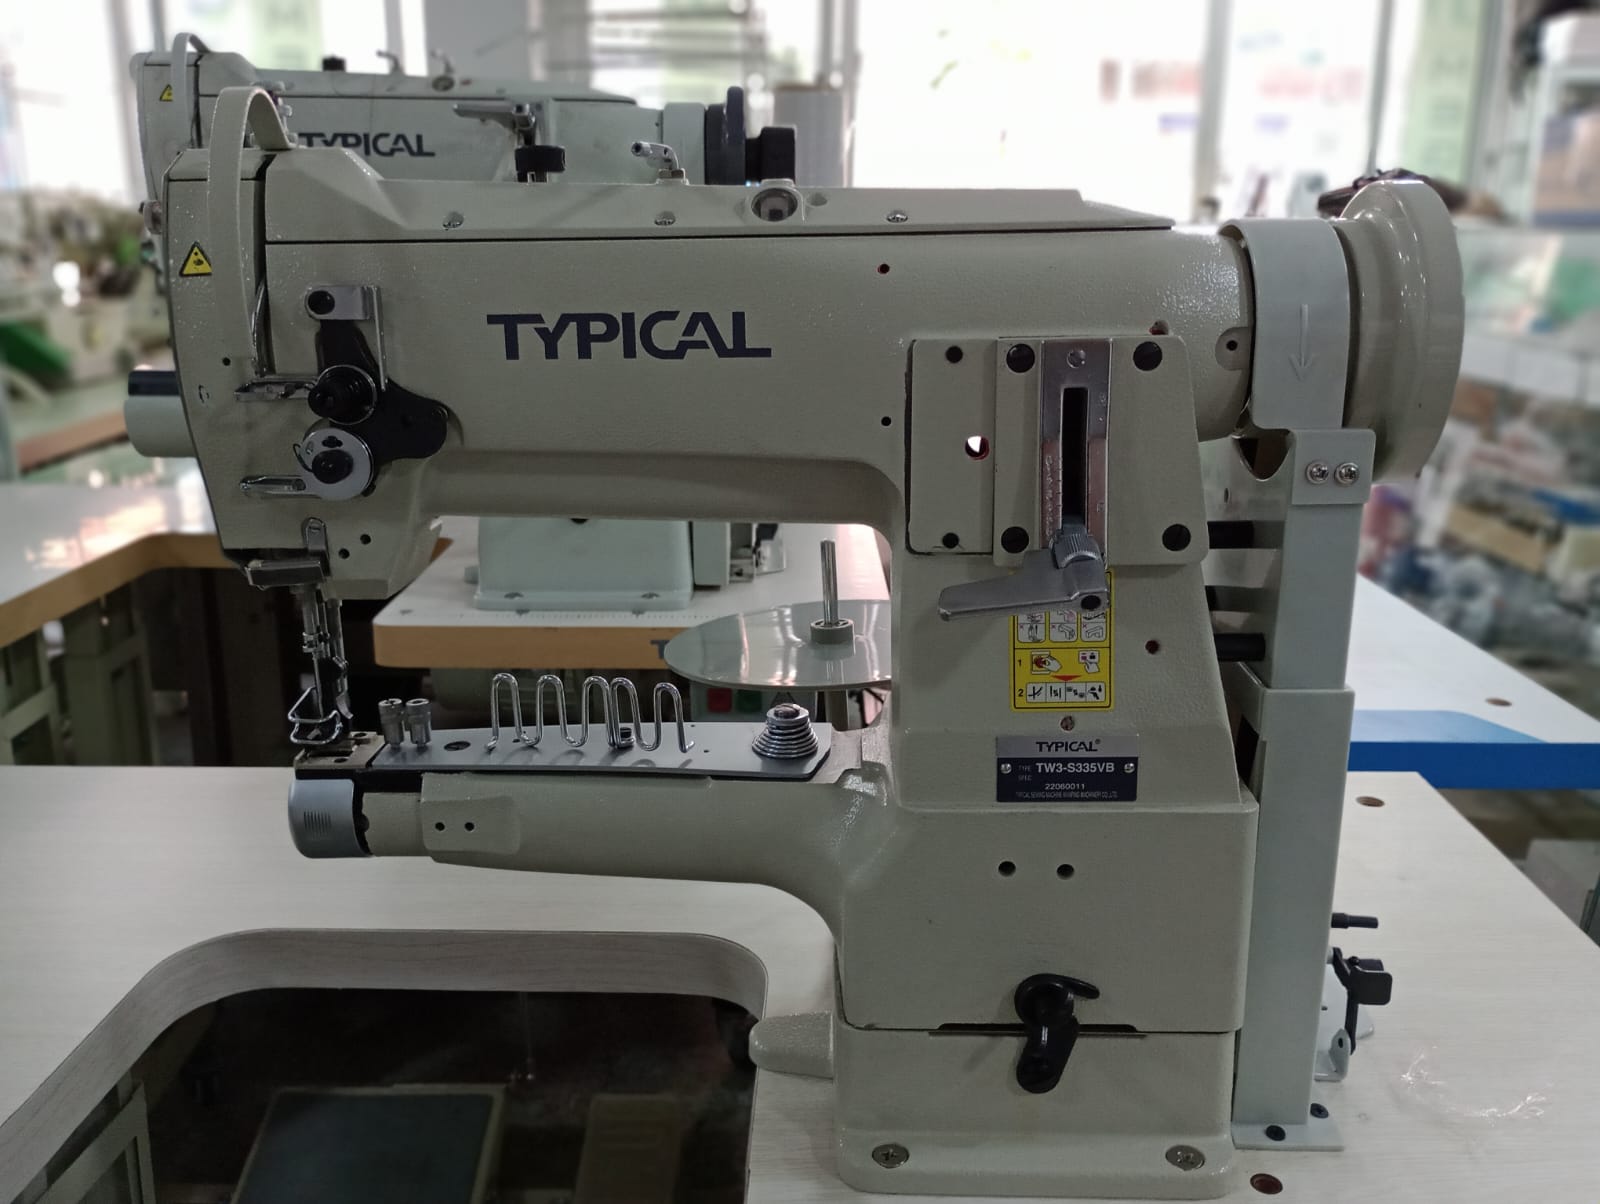 335 fabricantes y proveedores de máquinas de coser - Fábrica de